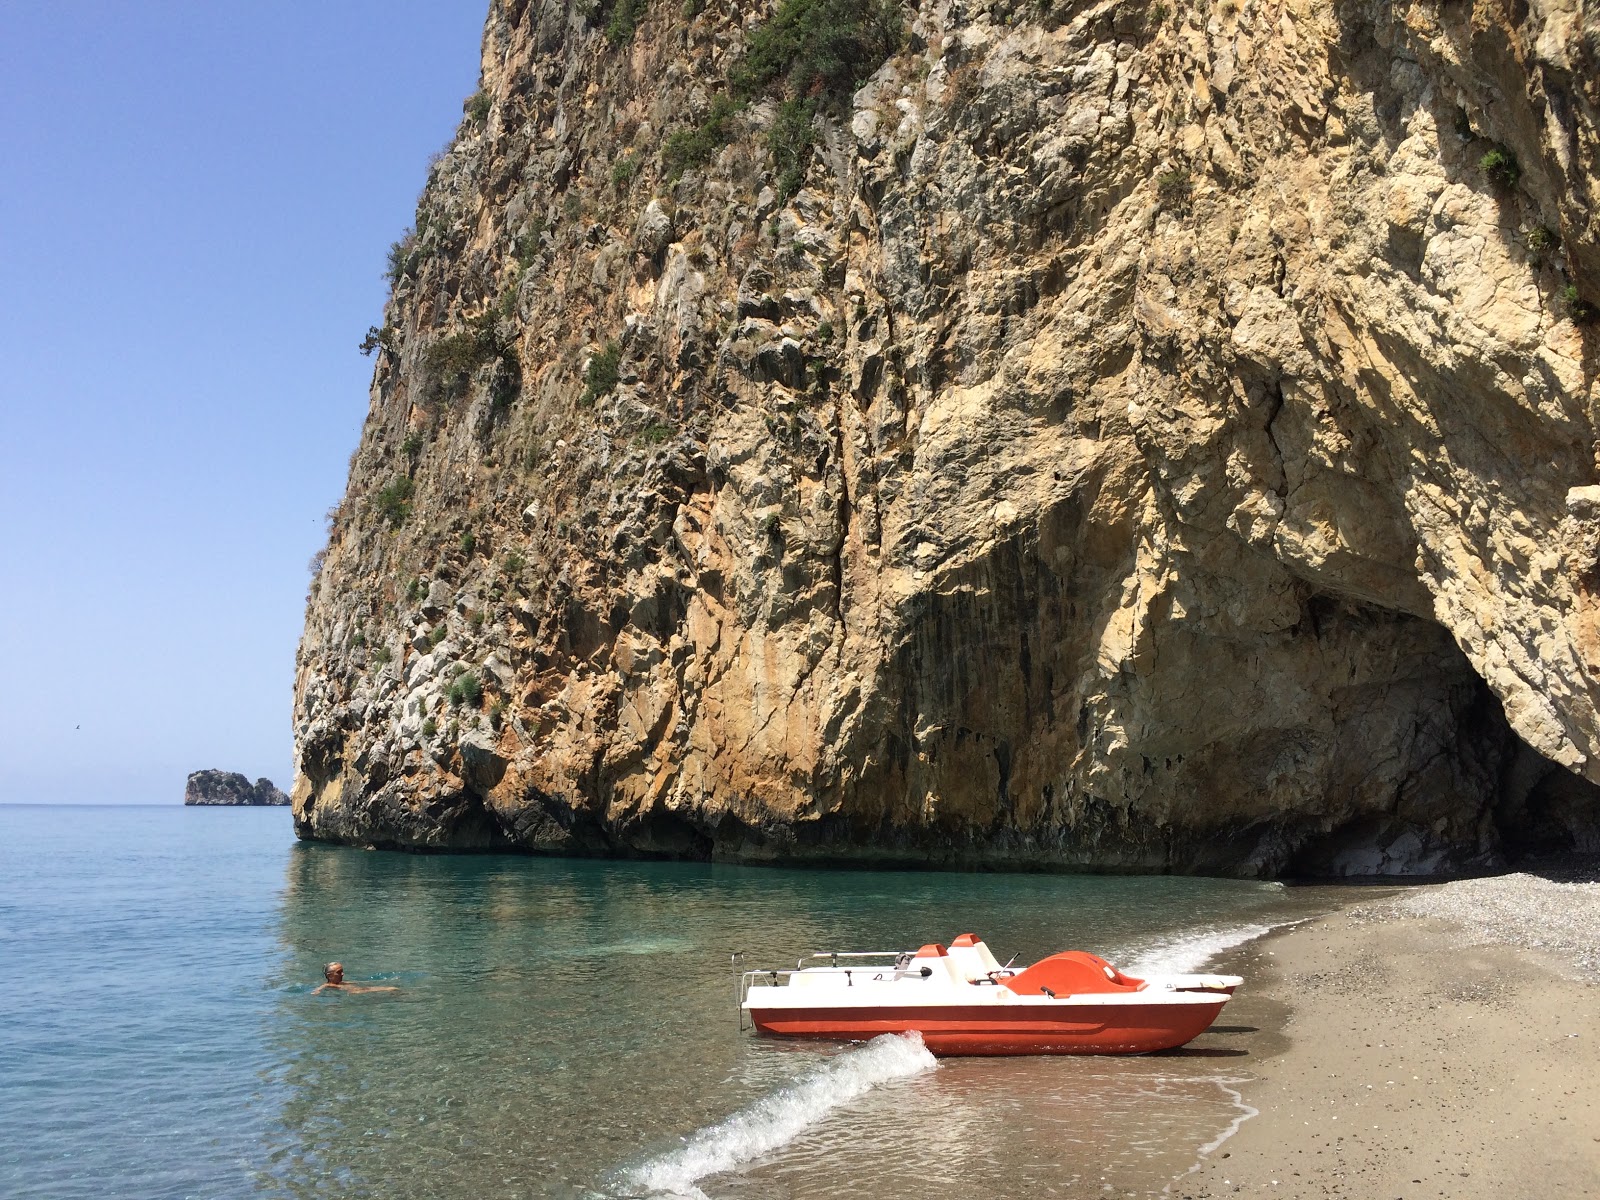 Cala delle Ossa'in fotoğrafı gri kum ve çakıl yüzey ile